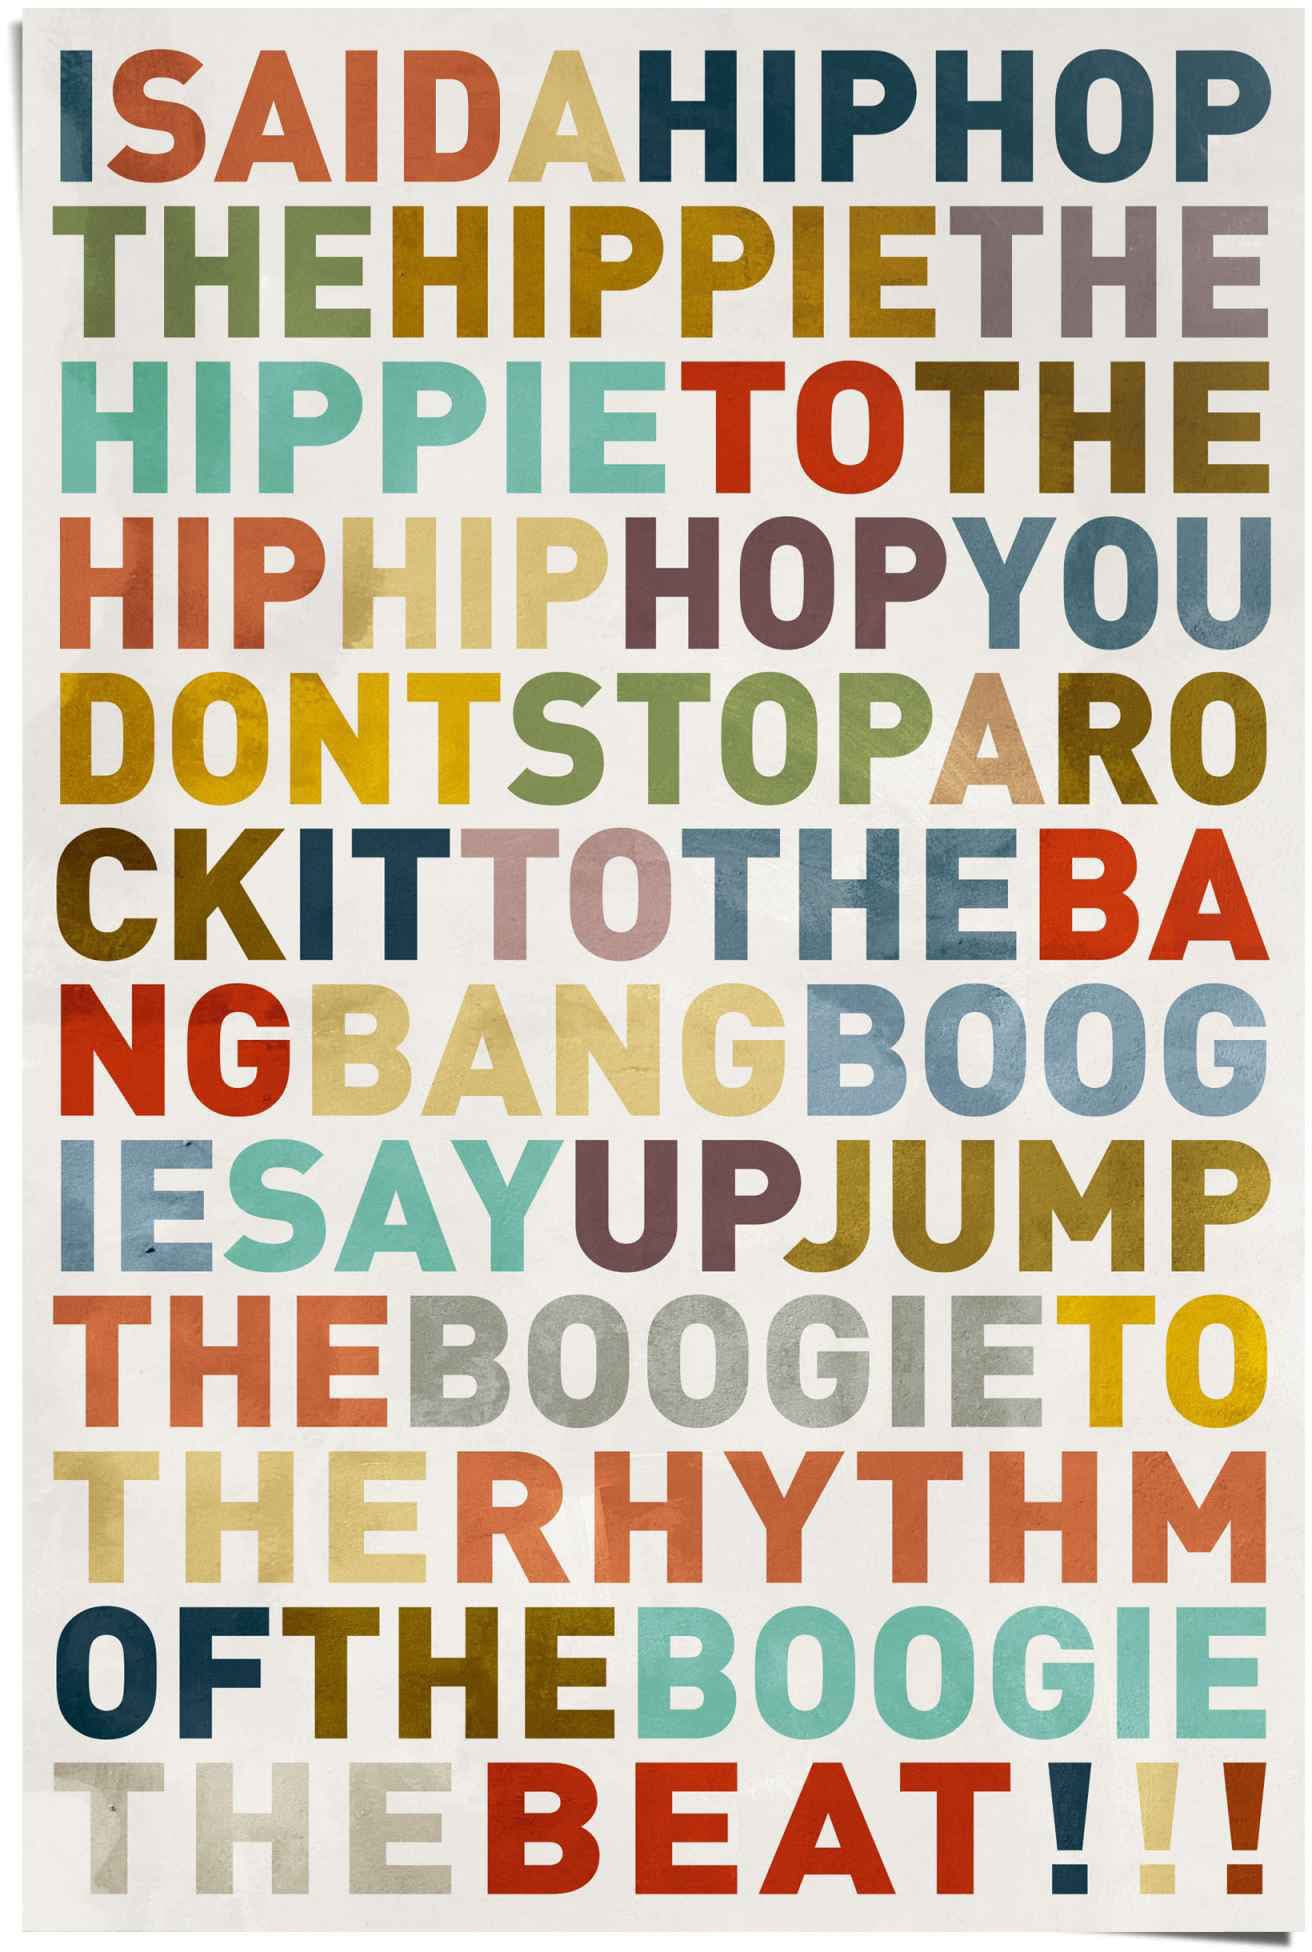 Songtext Hip-Hop (1 »Poster - - Poster Farbig HipHop said Musik«, a Reinders! I bestellen Musiker, Raten St.) - auf